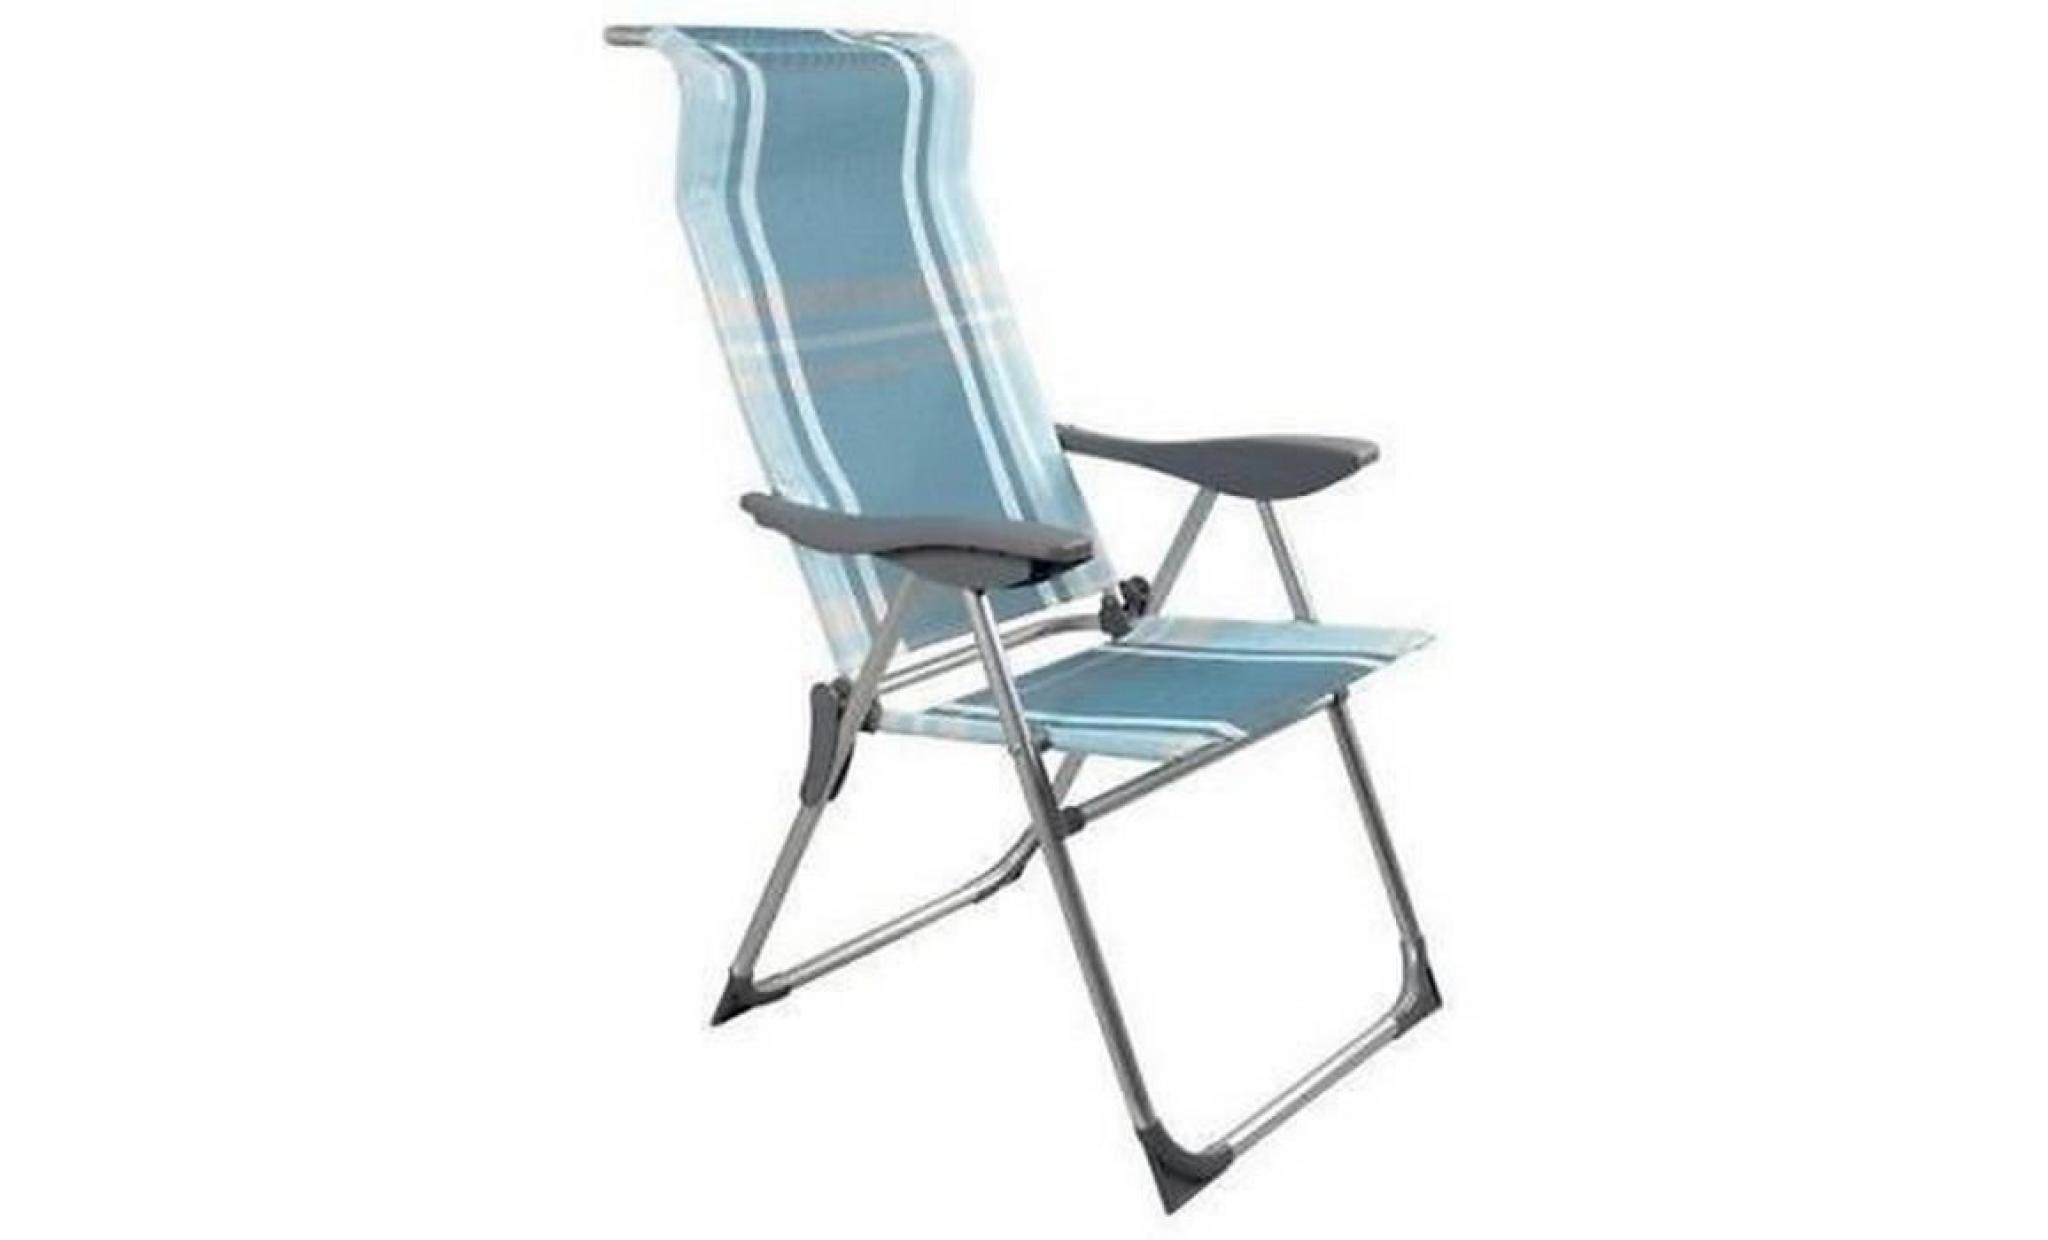 couleur bleue rayures chaise fauteuil camping plage pliable pliante relax alu jardin exterieur